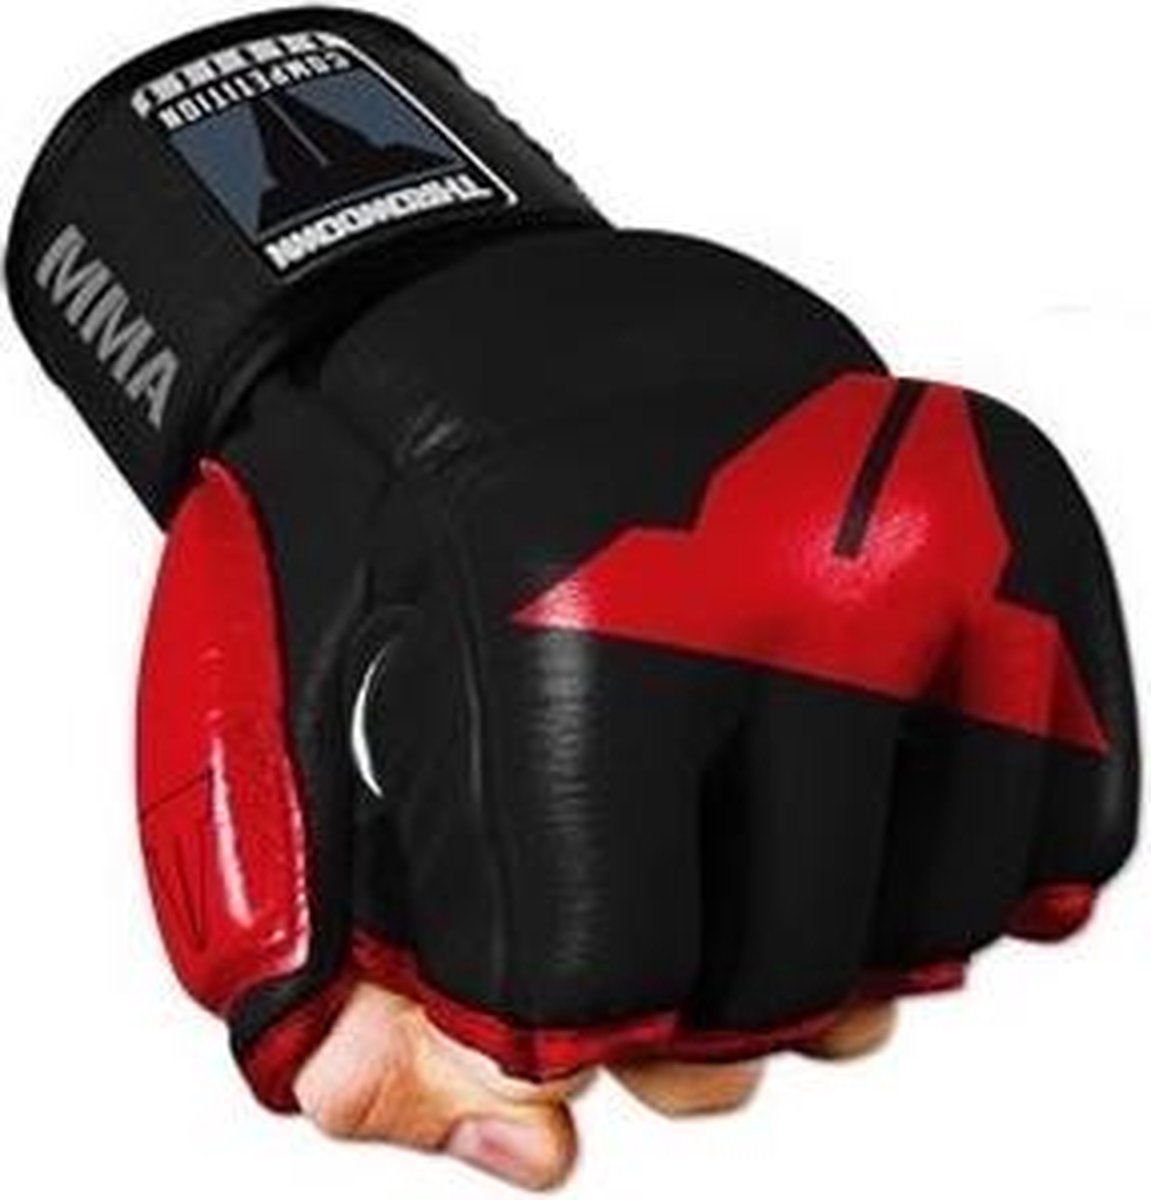 Throwdown - Throwdown Amateur Competition MMA Glove